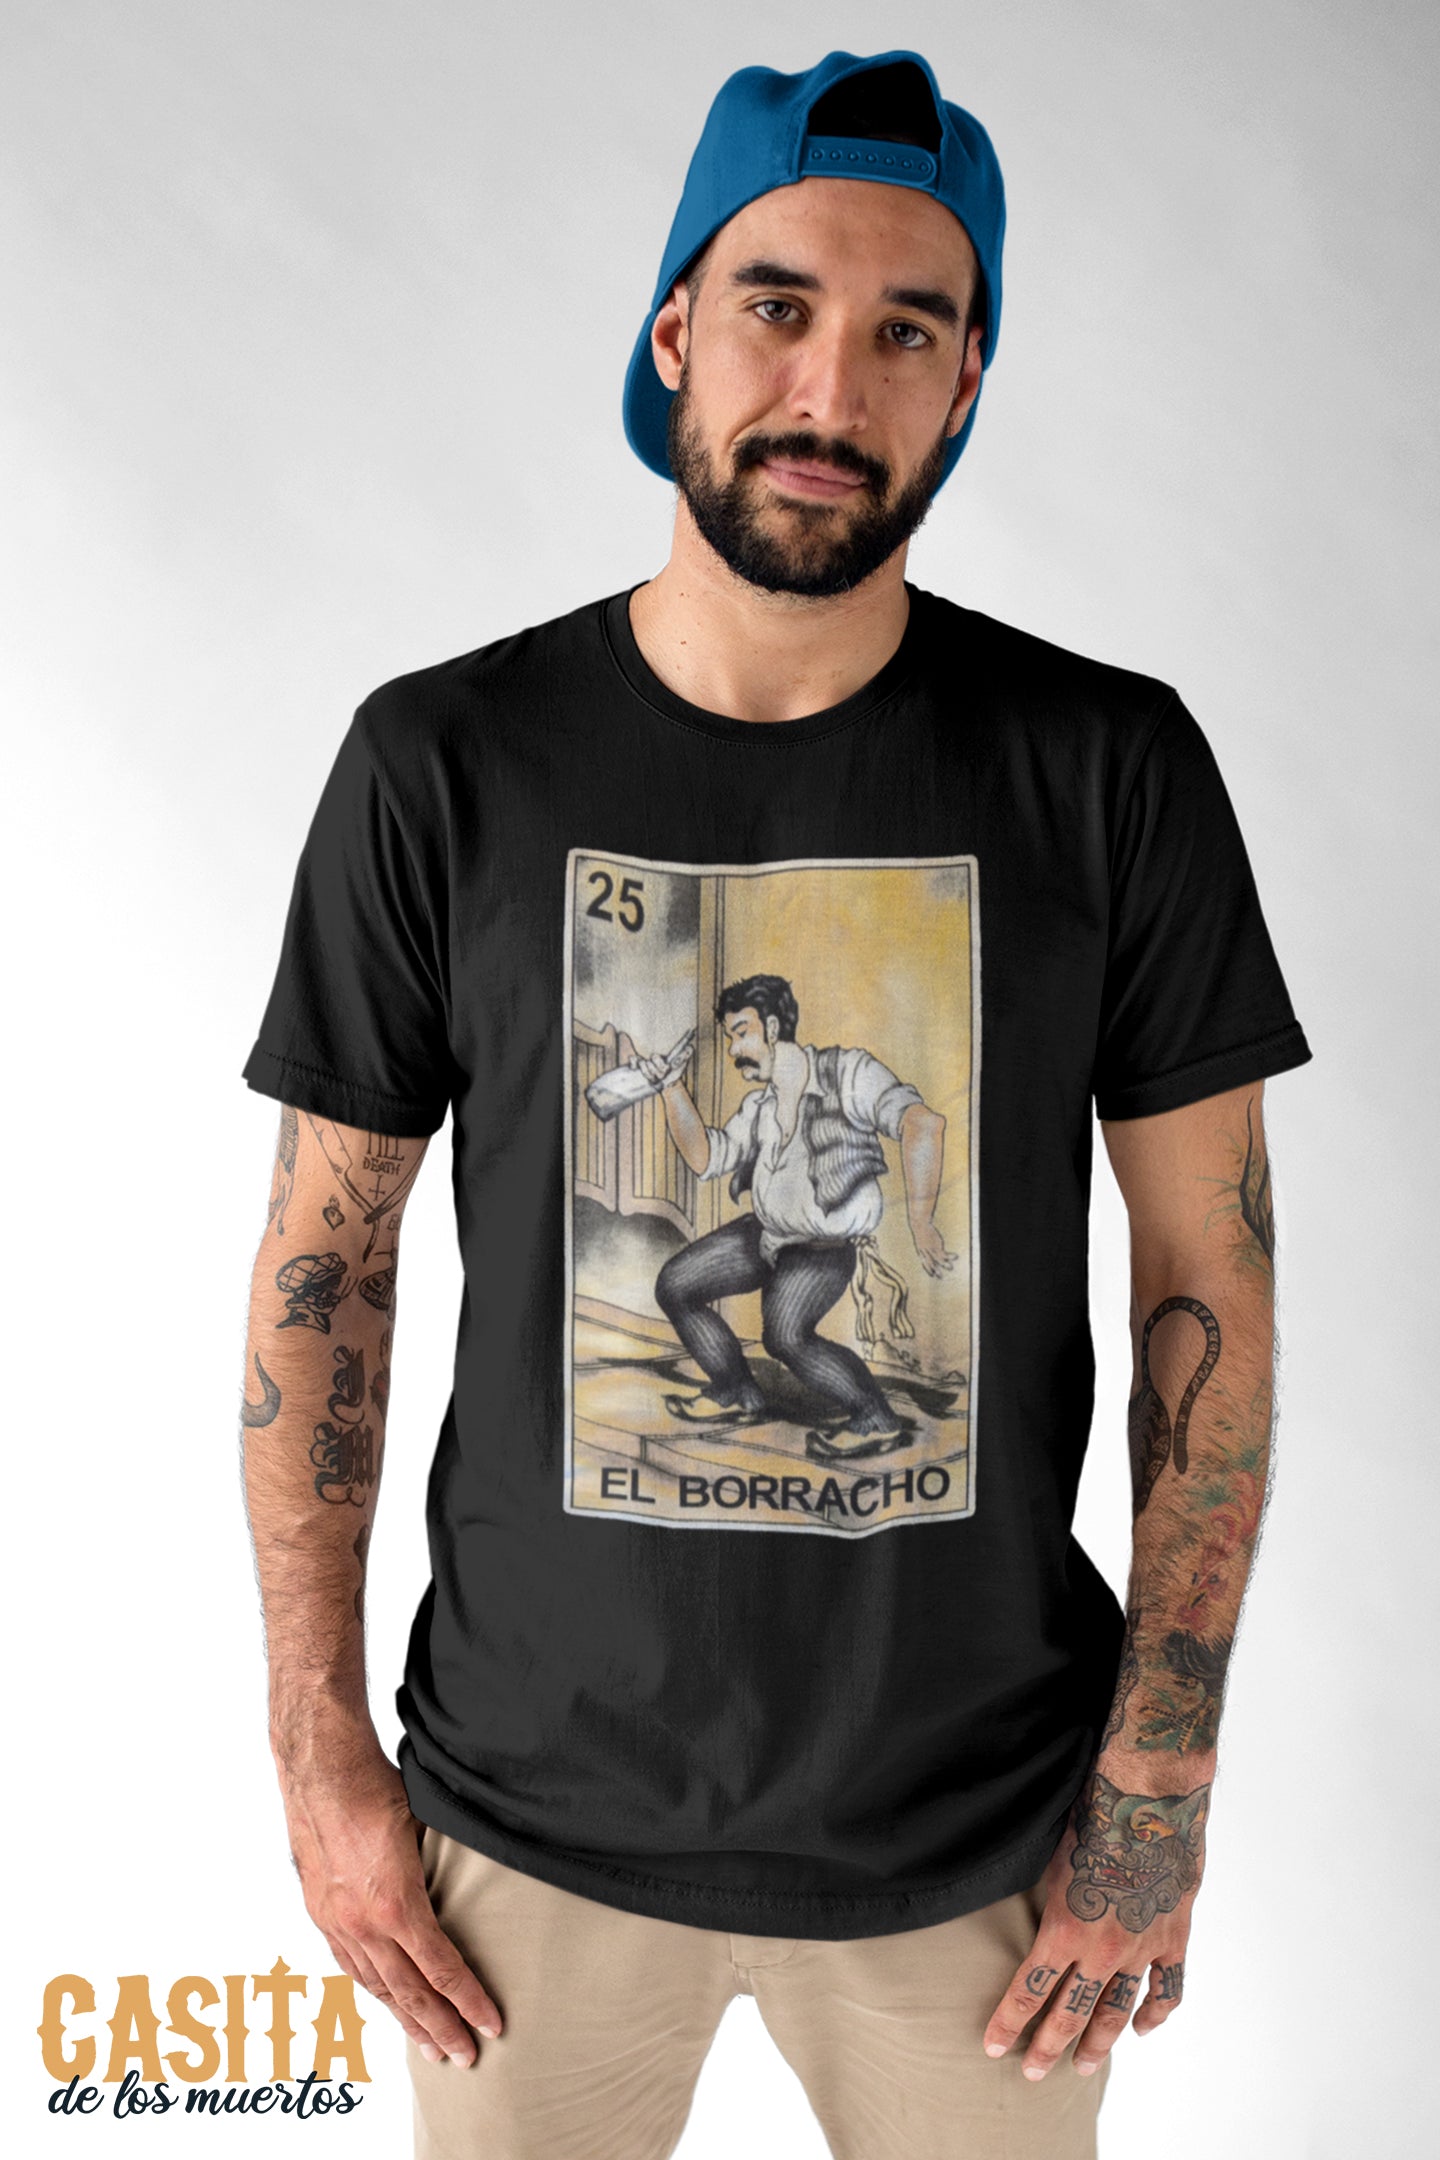 El Boracho T-Shirt, Mexican Loteria Inspired Black Cotton T-Shirt by Casita De Los Muertos